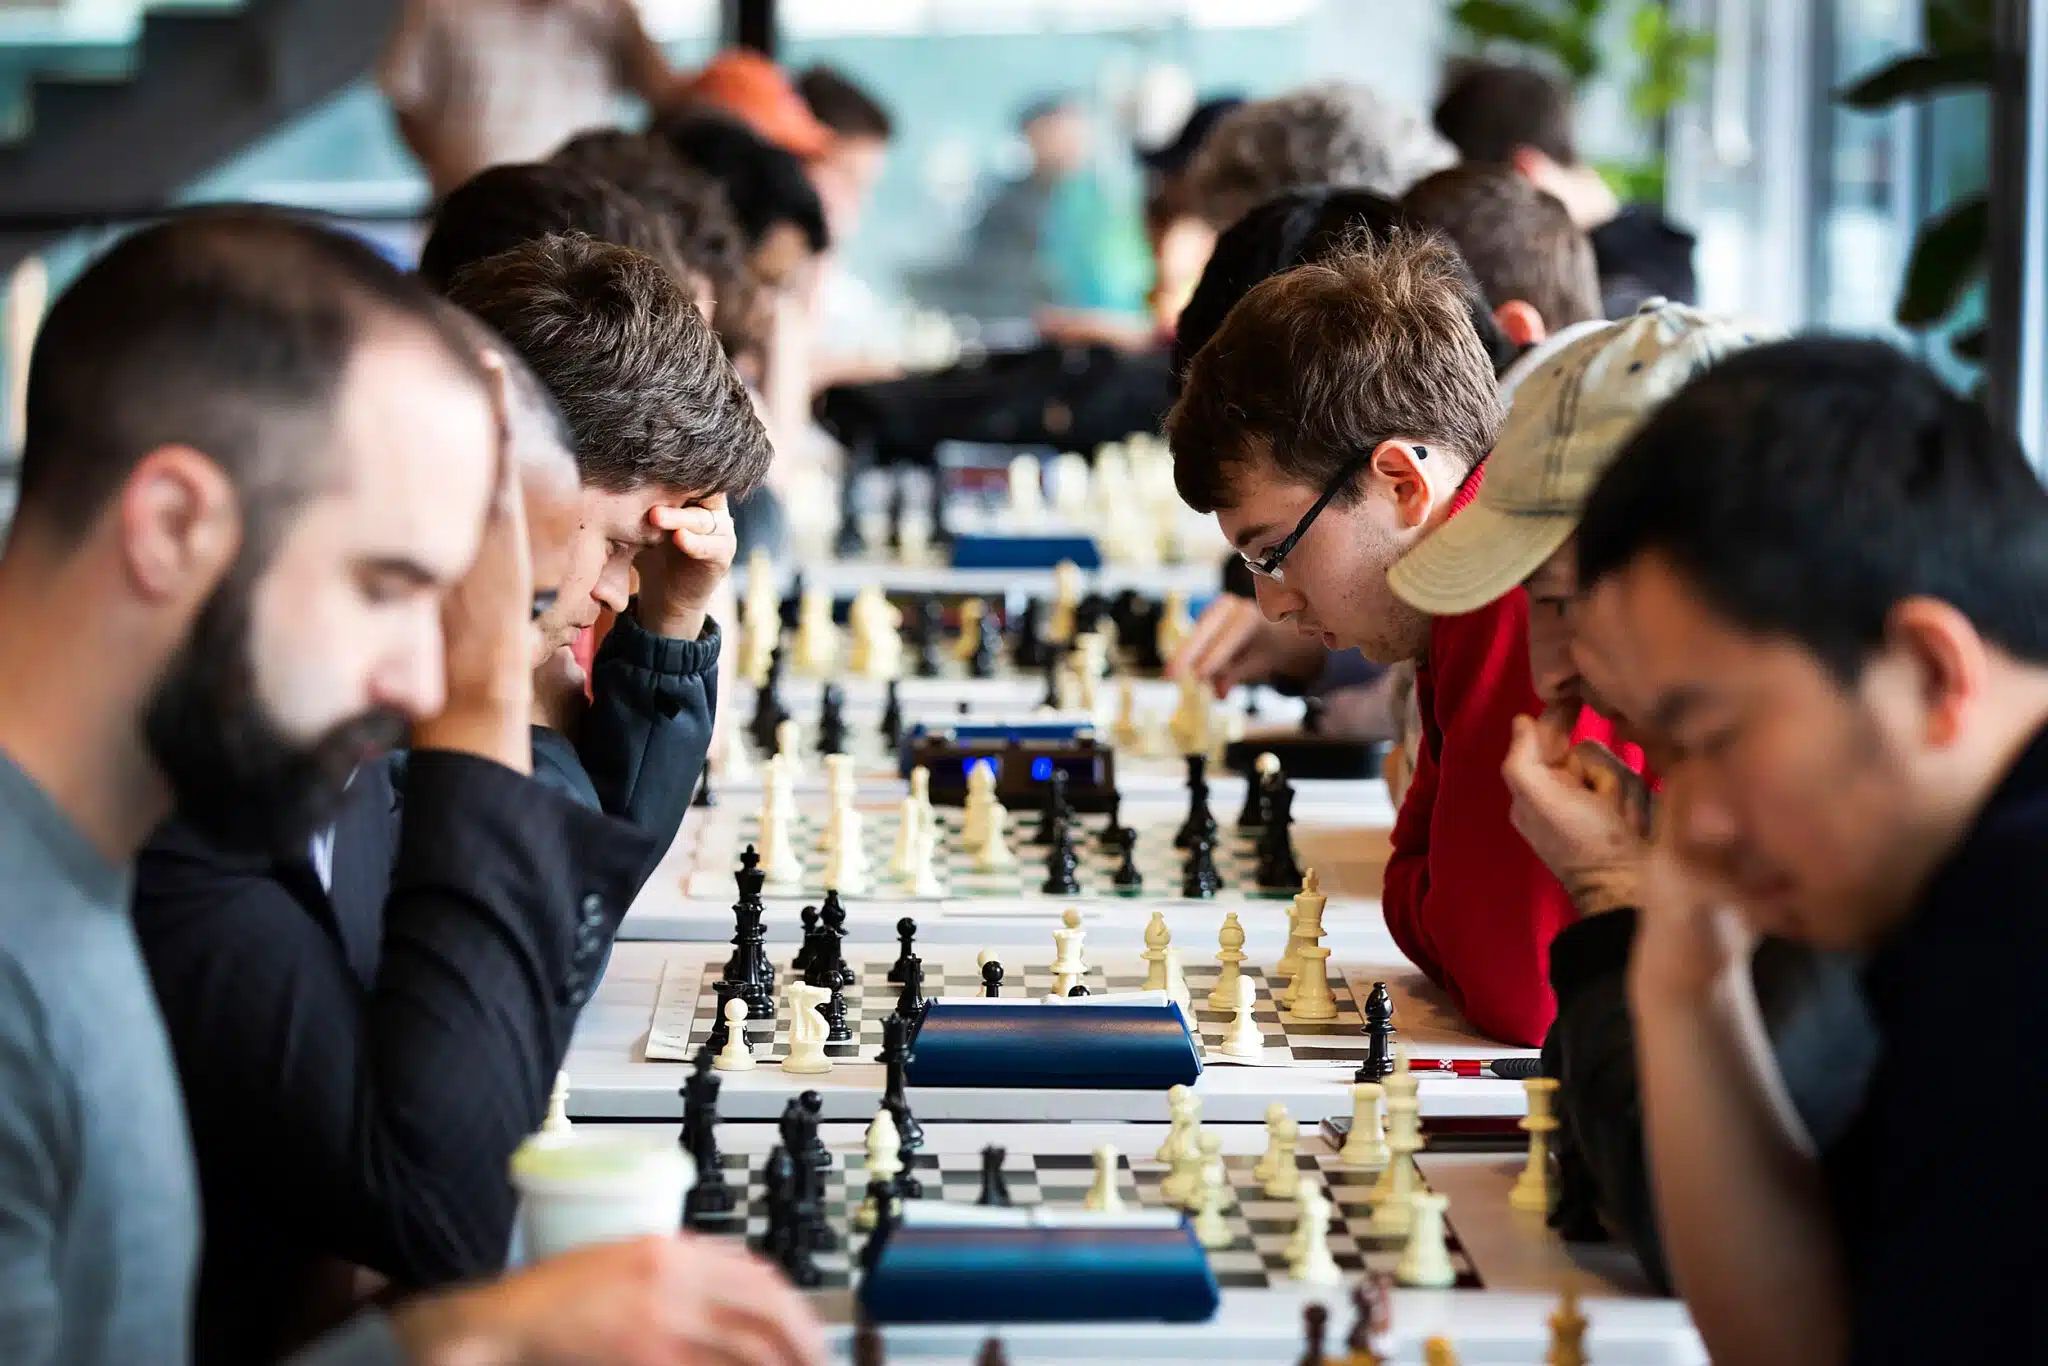 Качество воздуха повлияло на игру в шахматы и принятие решений